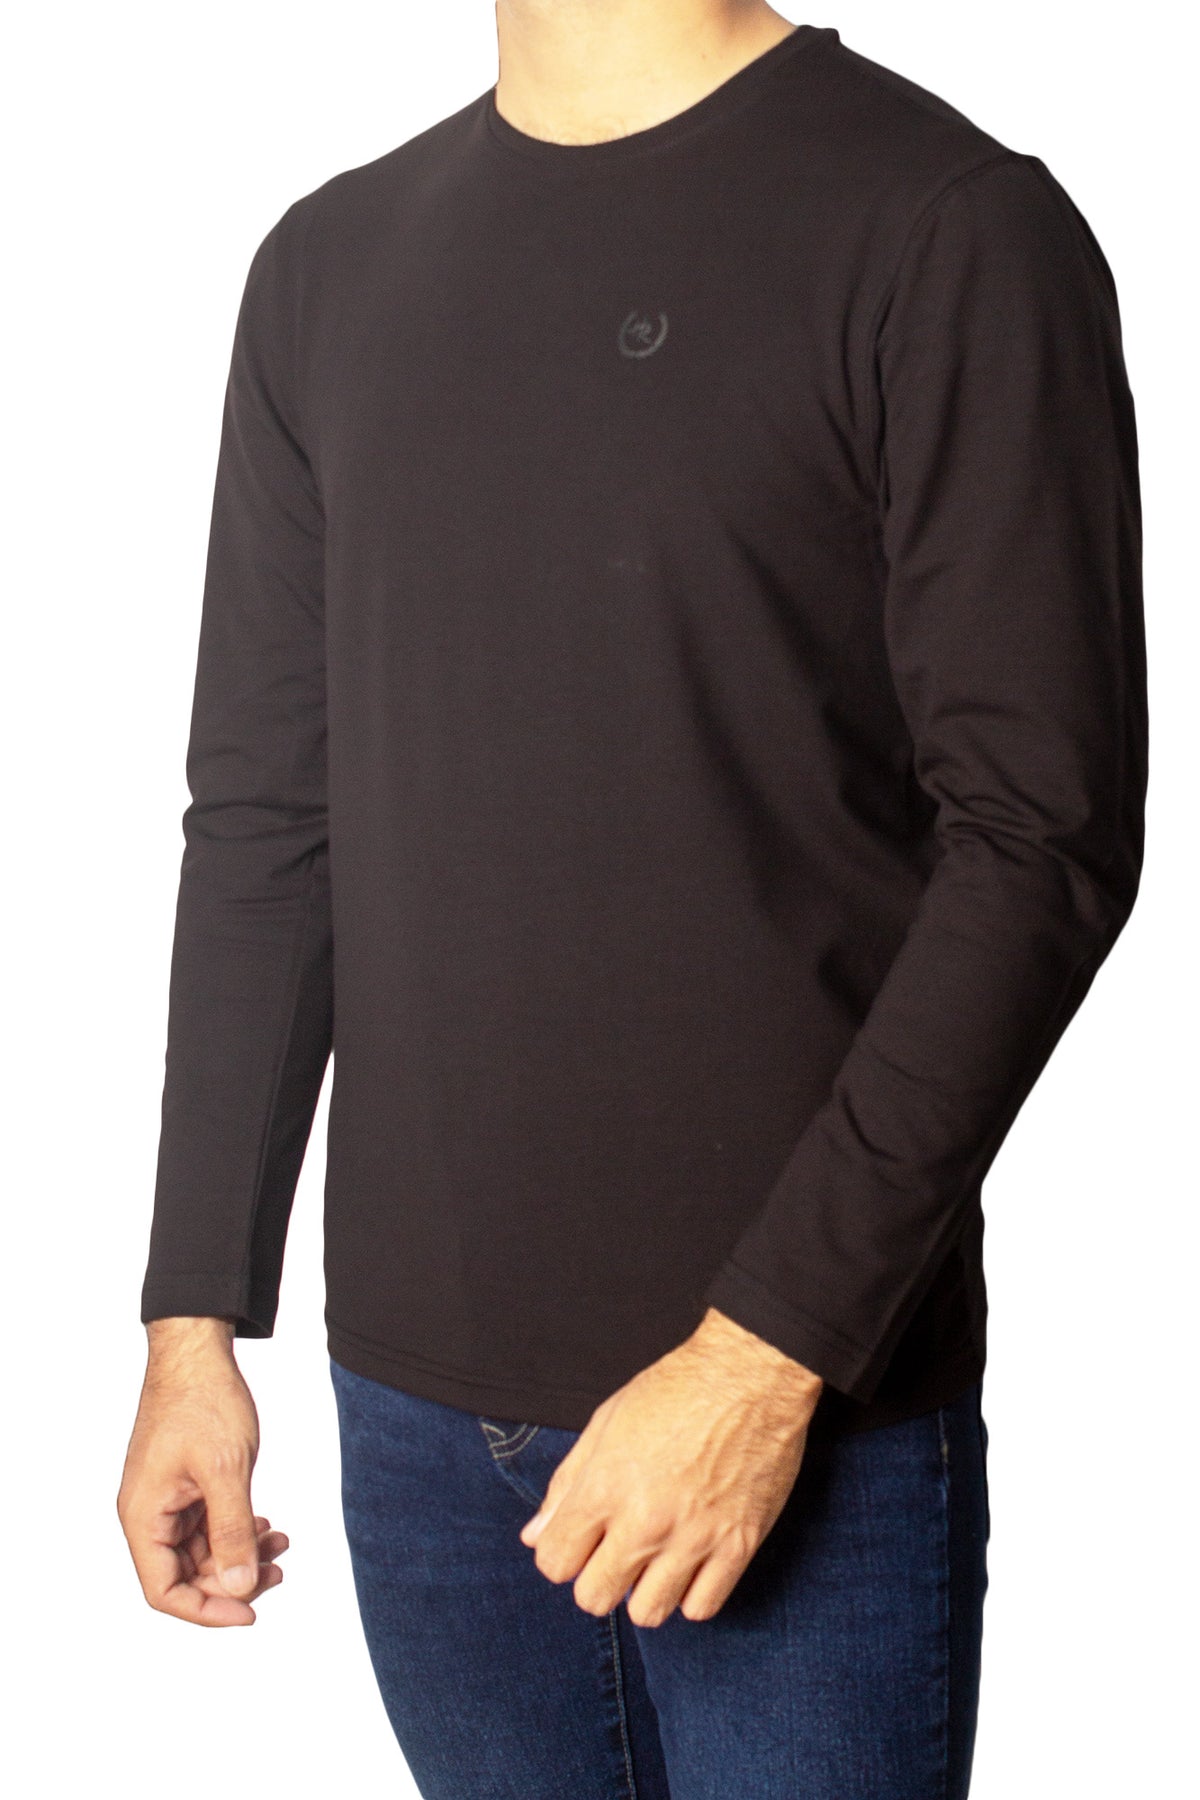 Plain Full Sleeves T-Shirt Tsh-6844 Black